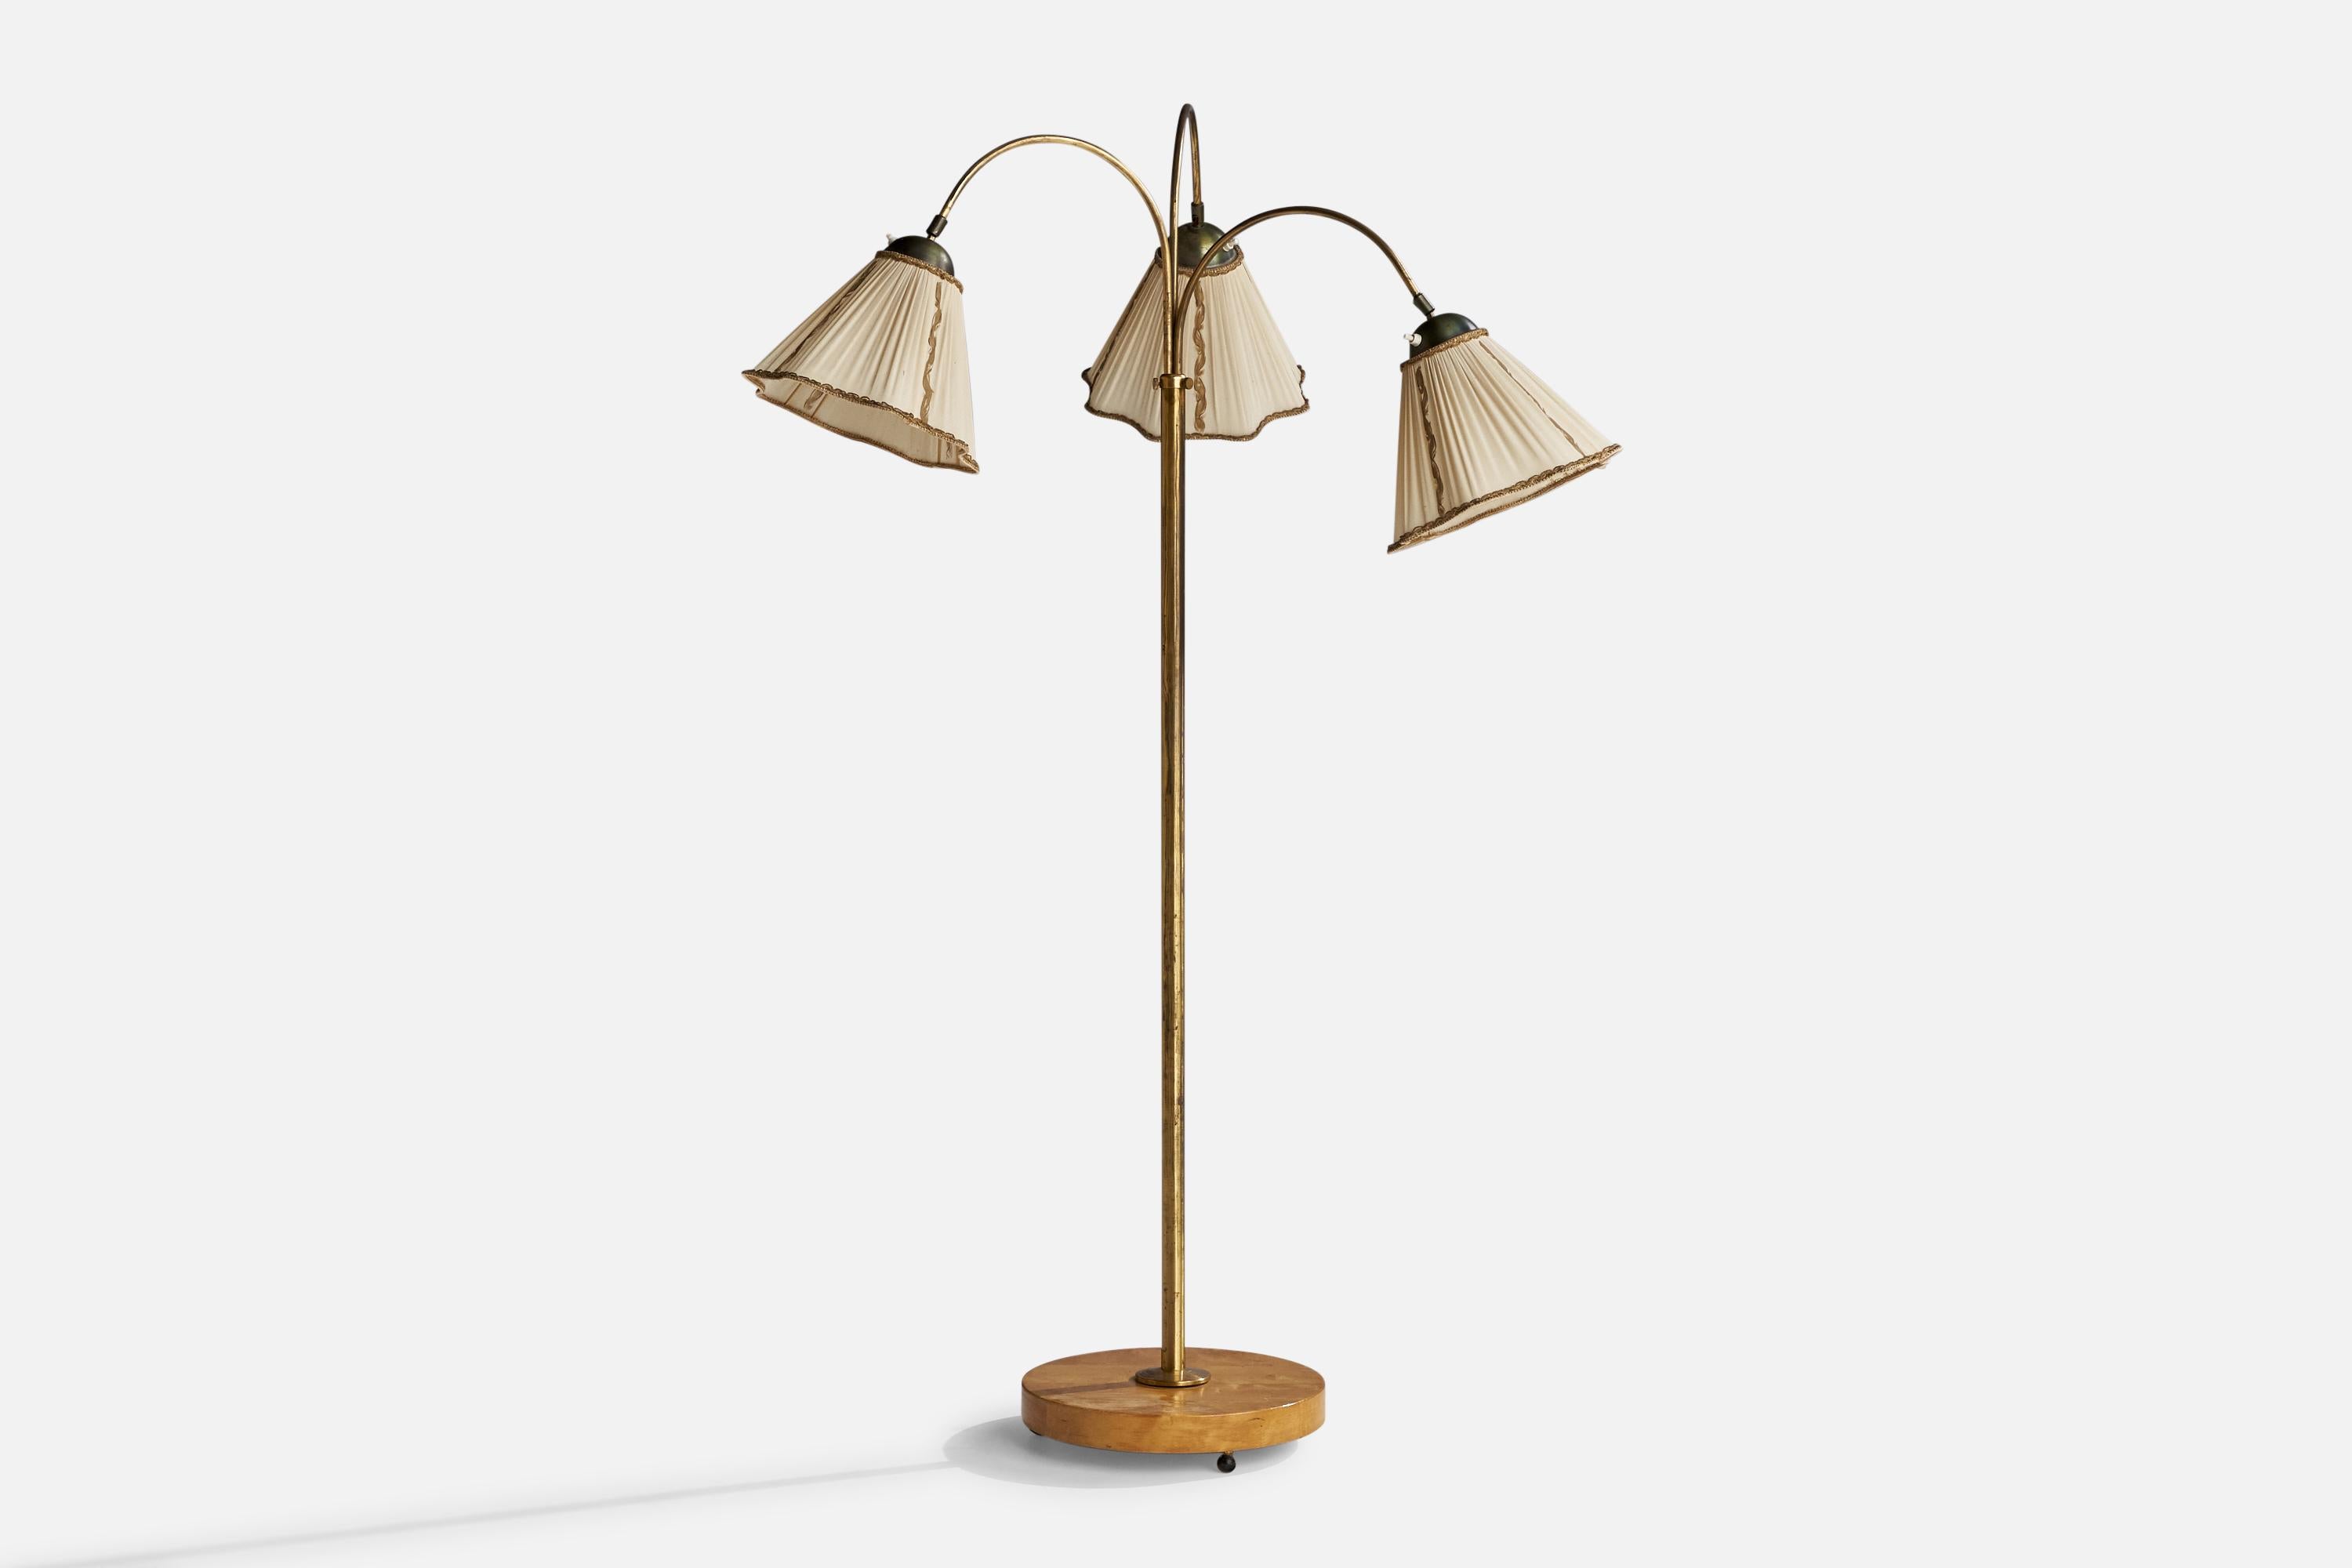 Eine verstellbare, dreiarmige Stehlampe aus Messing, cremefarbenem Stoff und Birke, entworfen und hergestellt in Schweden, 1940er Jahre.

Abmessungen variabel.
Gesamtabmessungen (Zoll): 59,25